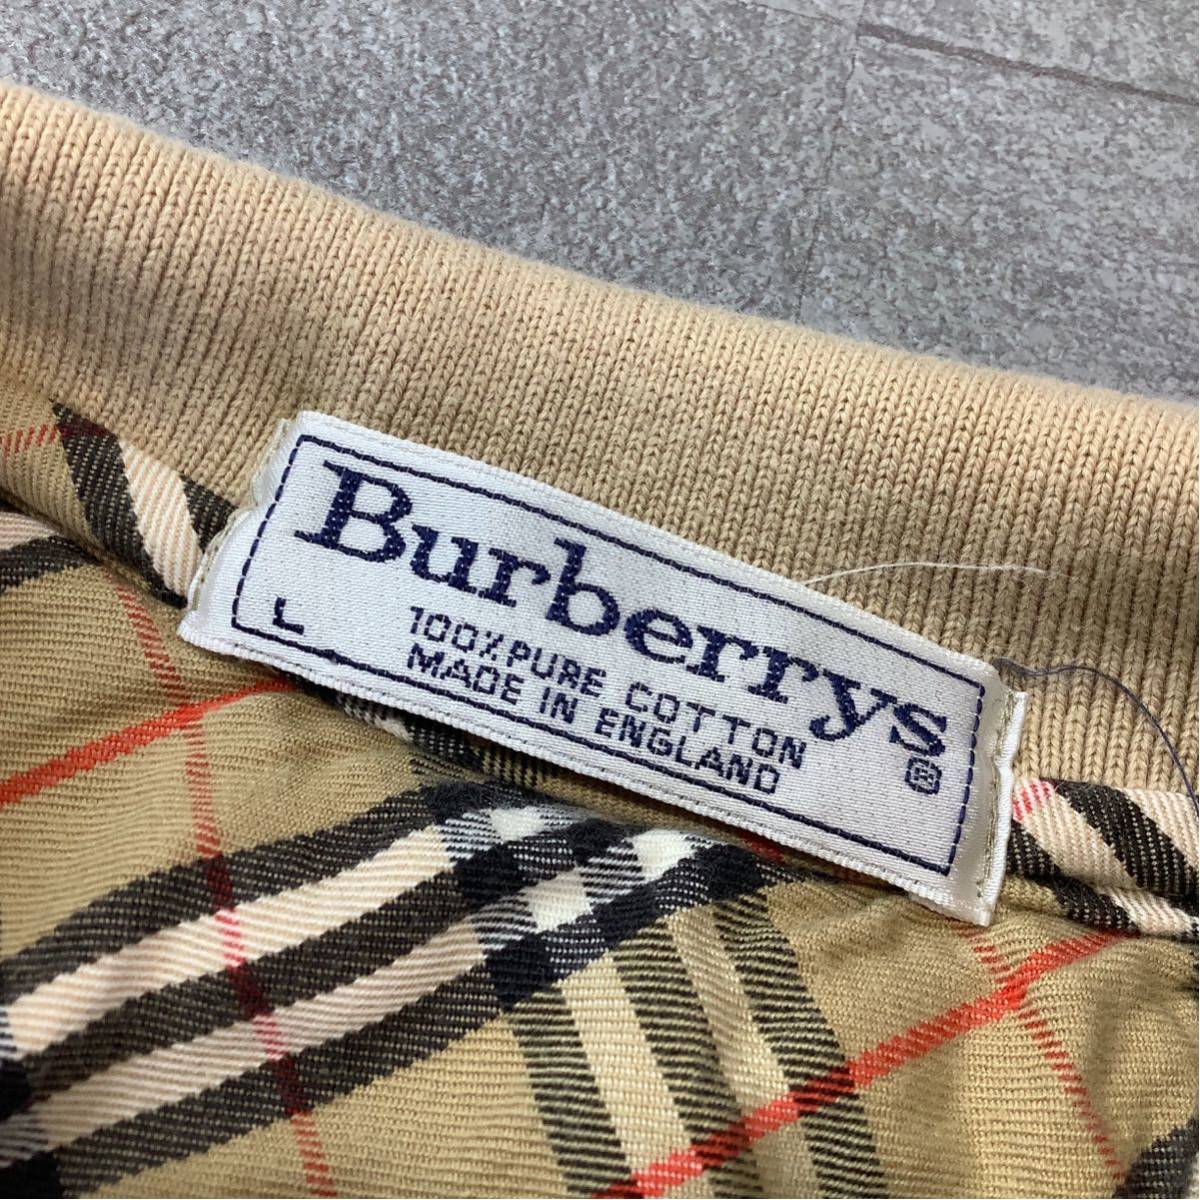 90*s Англия производства Burberry Burberry noba проверка рубашка-поло с длинным рукавом мужской L размер свет бежевый Golf 